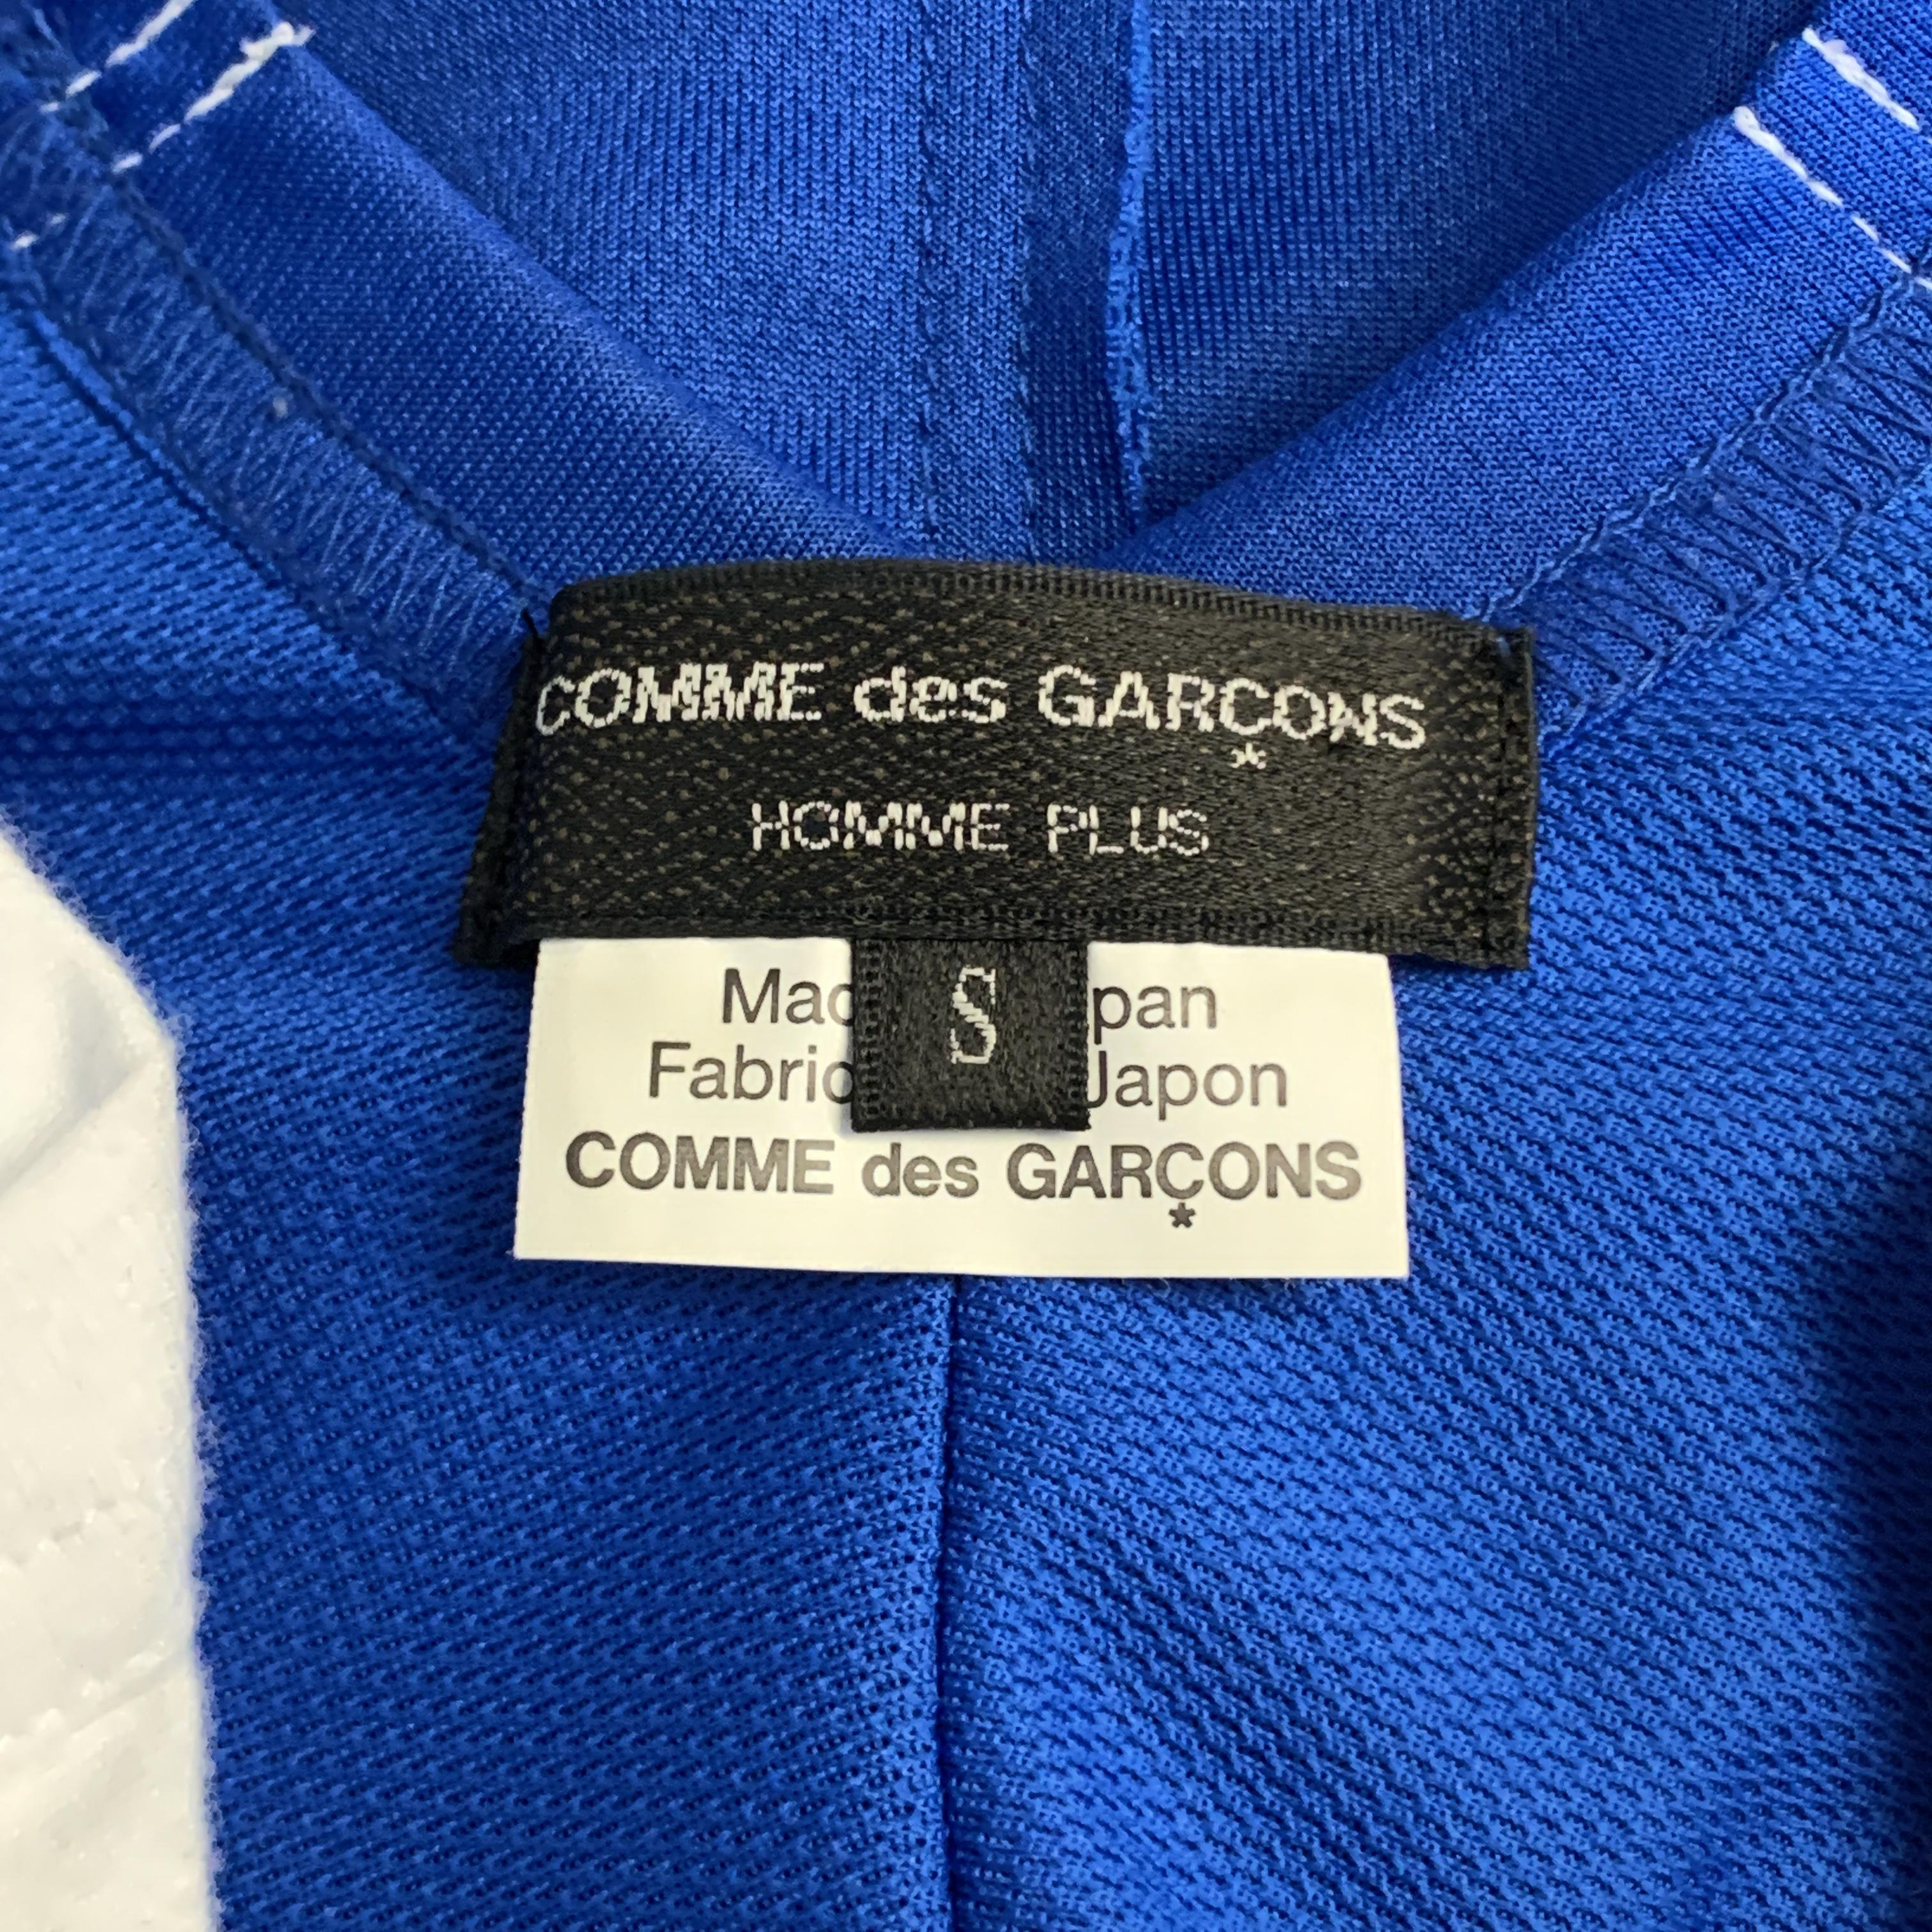 COMME des GARCONS HOMME PLUS S/S 2019 Size S White & Blue Graphic T-Shirt 4